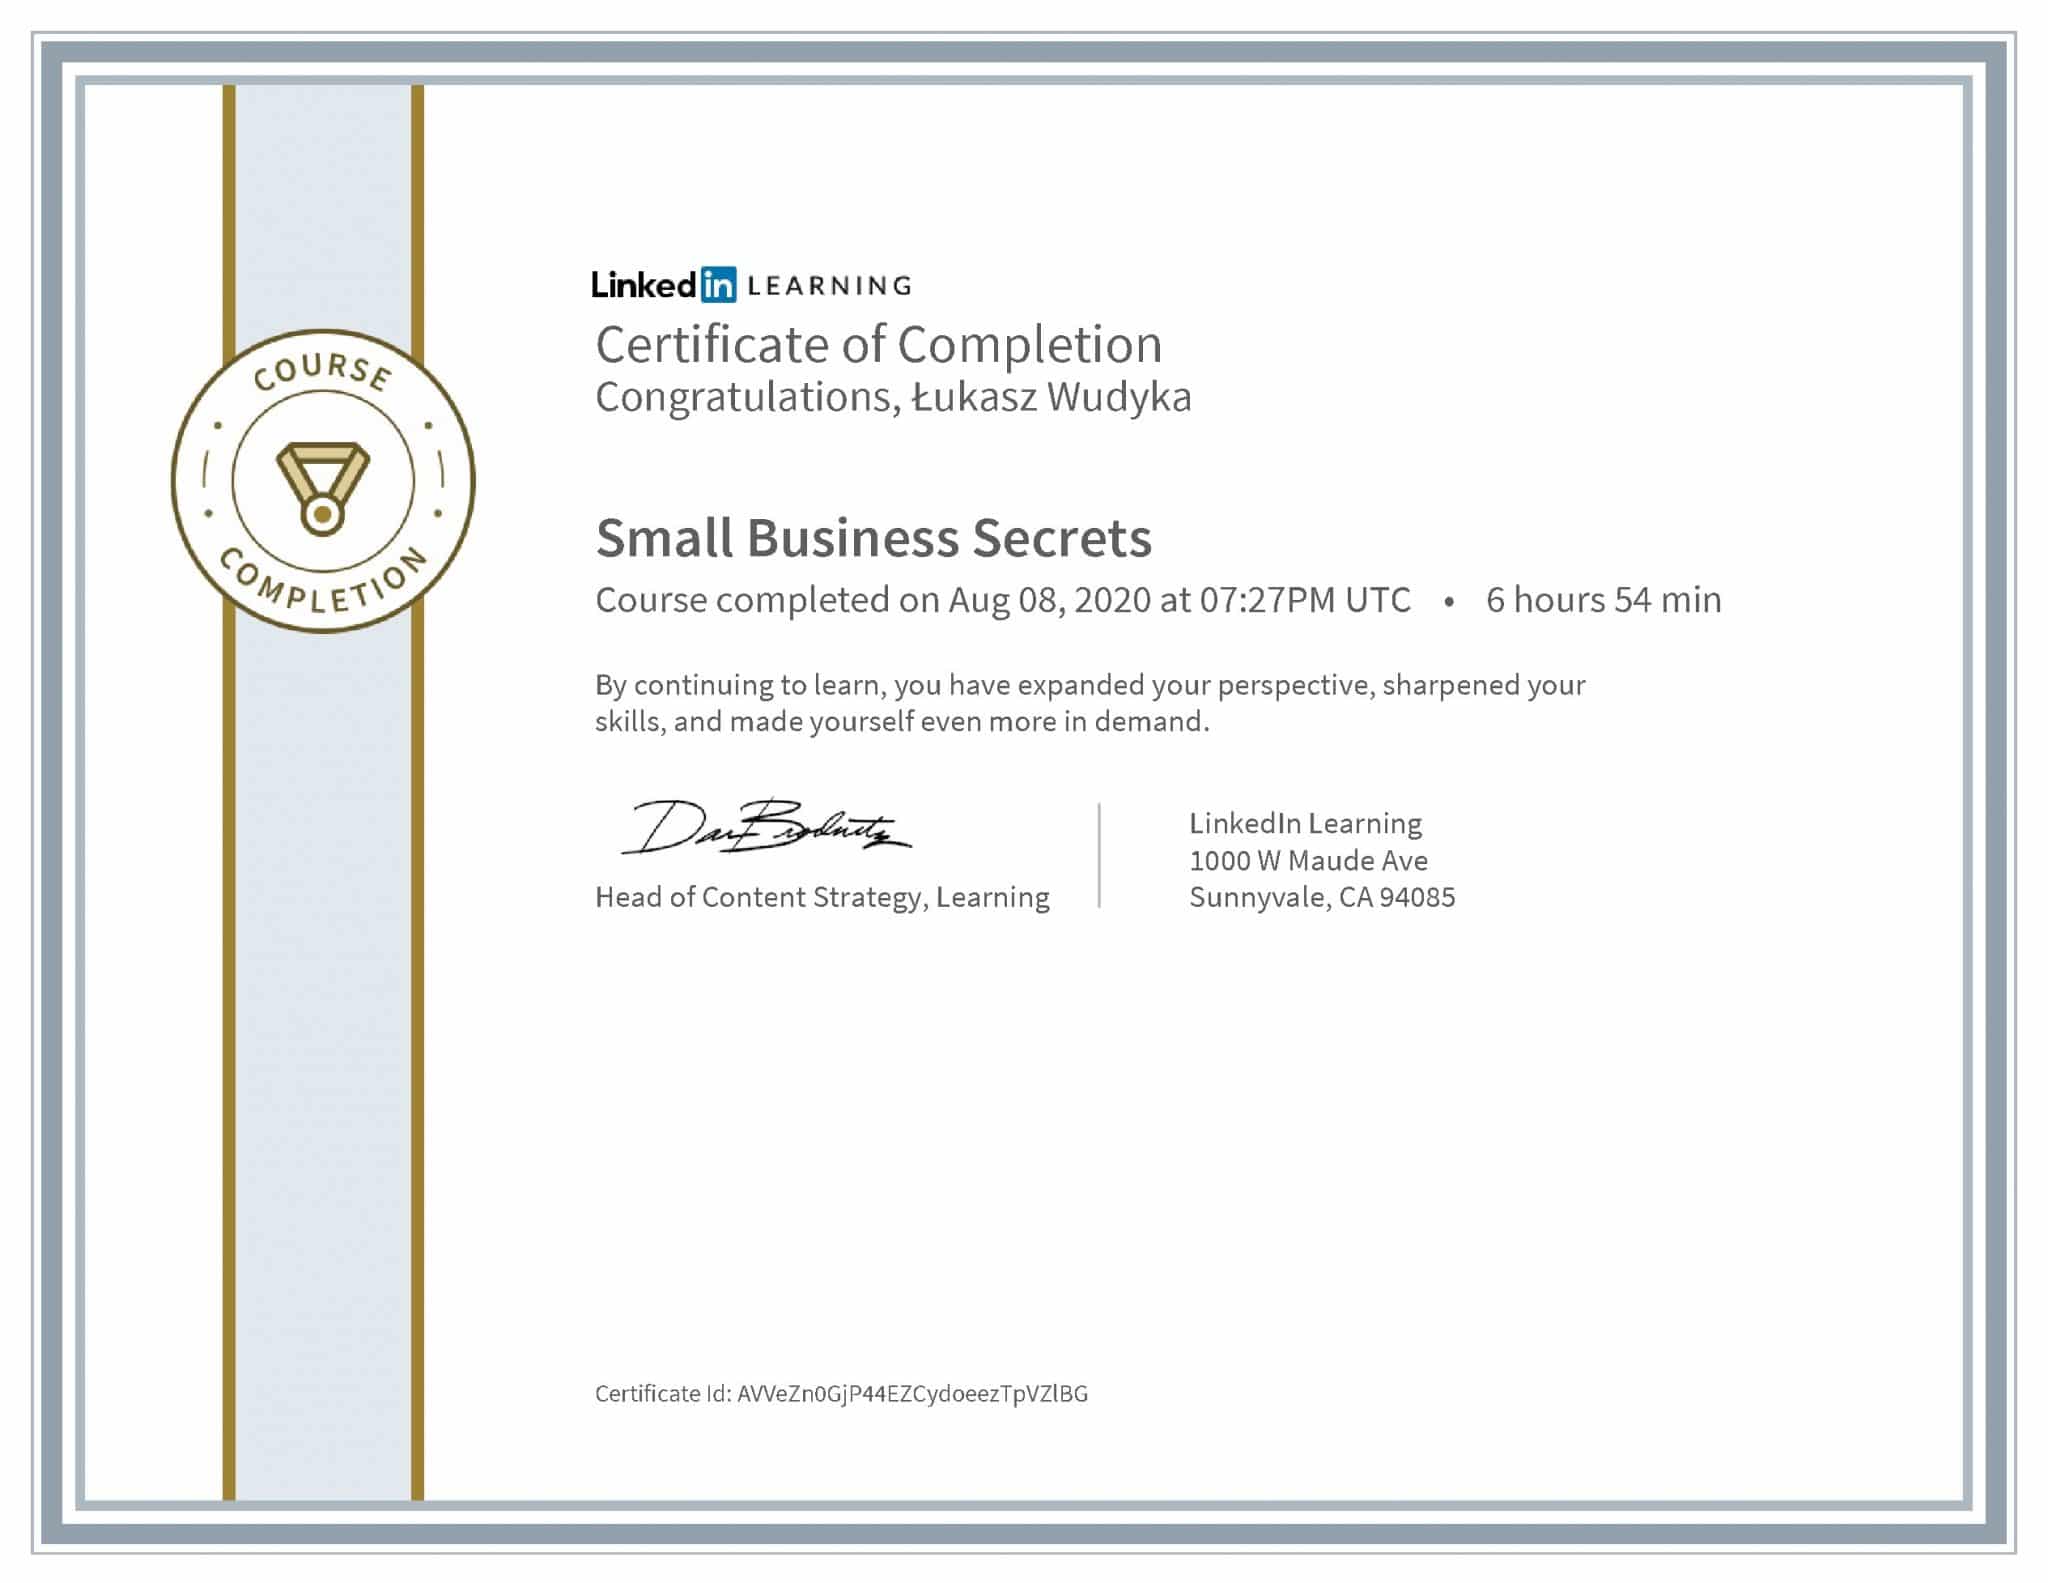 Łukasz Wudyka certyfikat LinkedIn Small Business Secrets